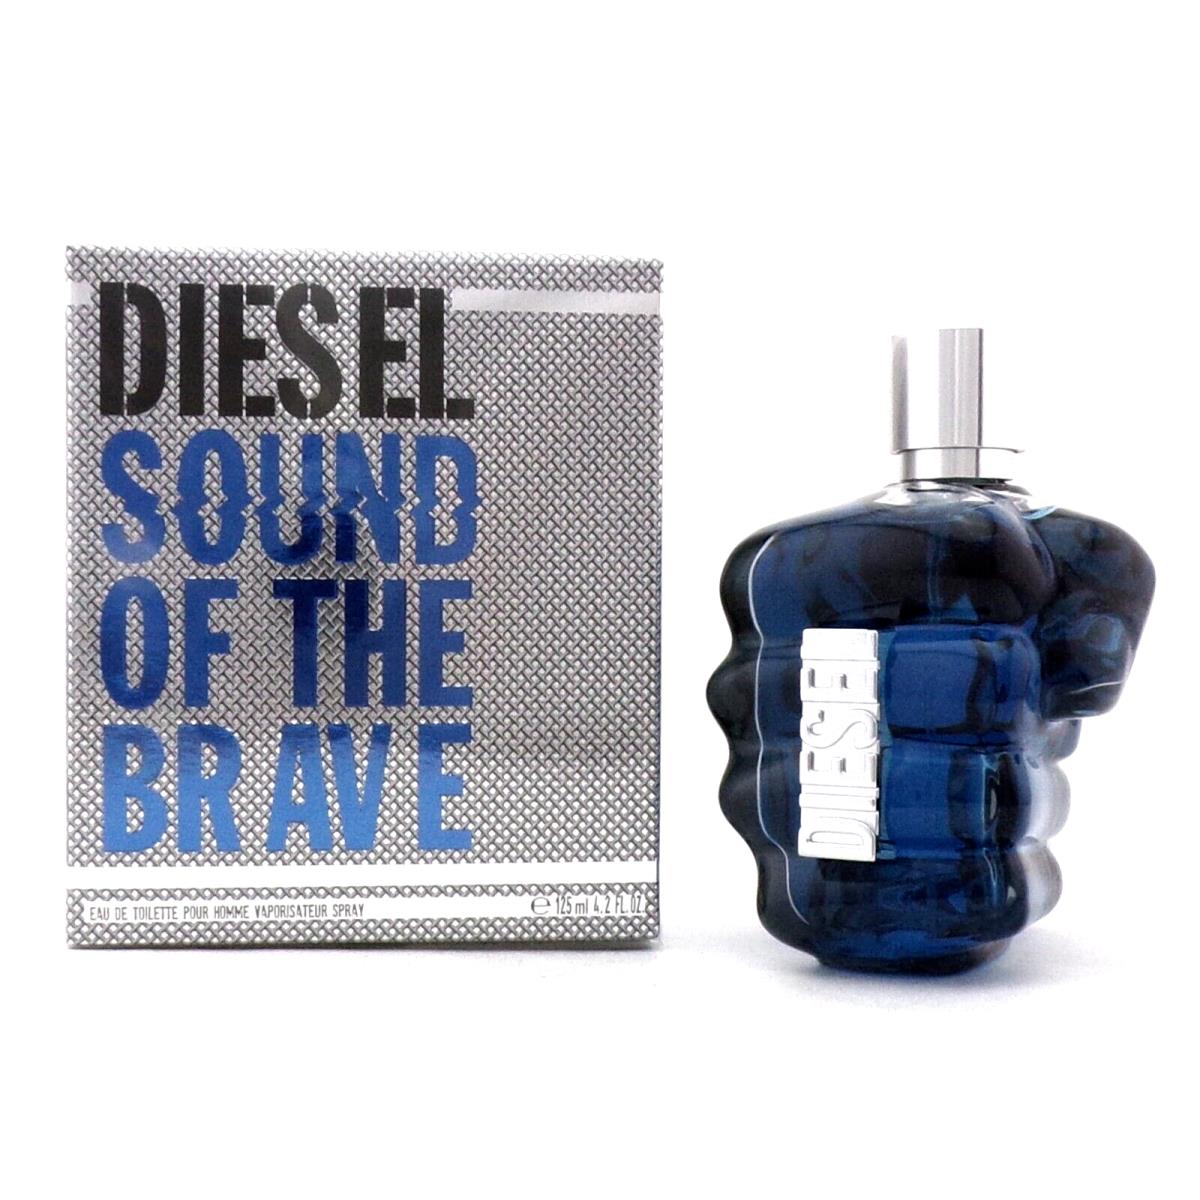 Diesel Sound OF The Brave 4.2 oz -125 ml Eau de Toilette Spray For Men